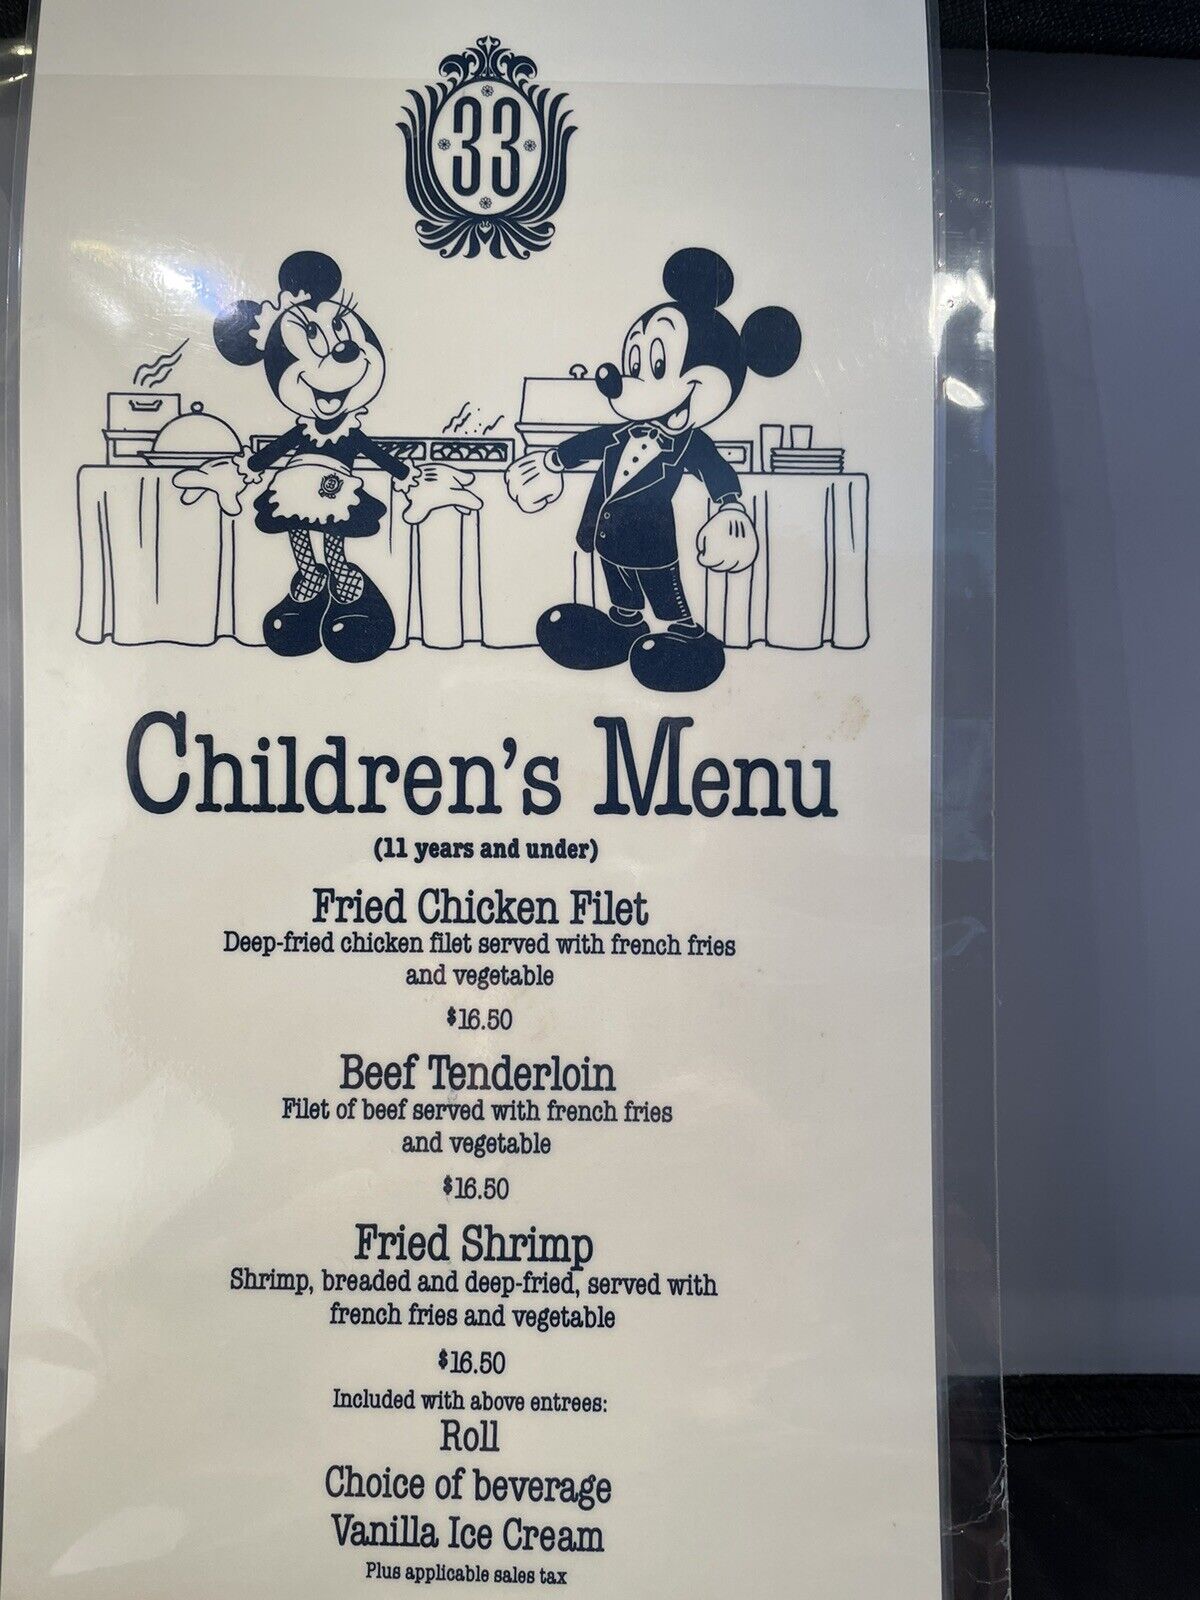 Disneyland Club33 rare children’s menu From many years ago